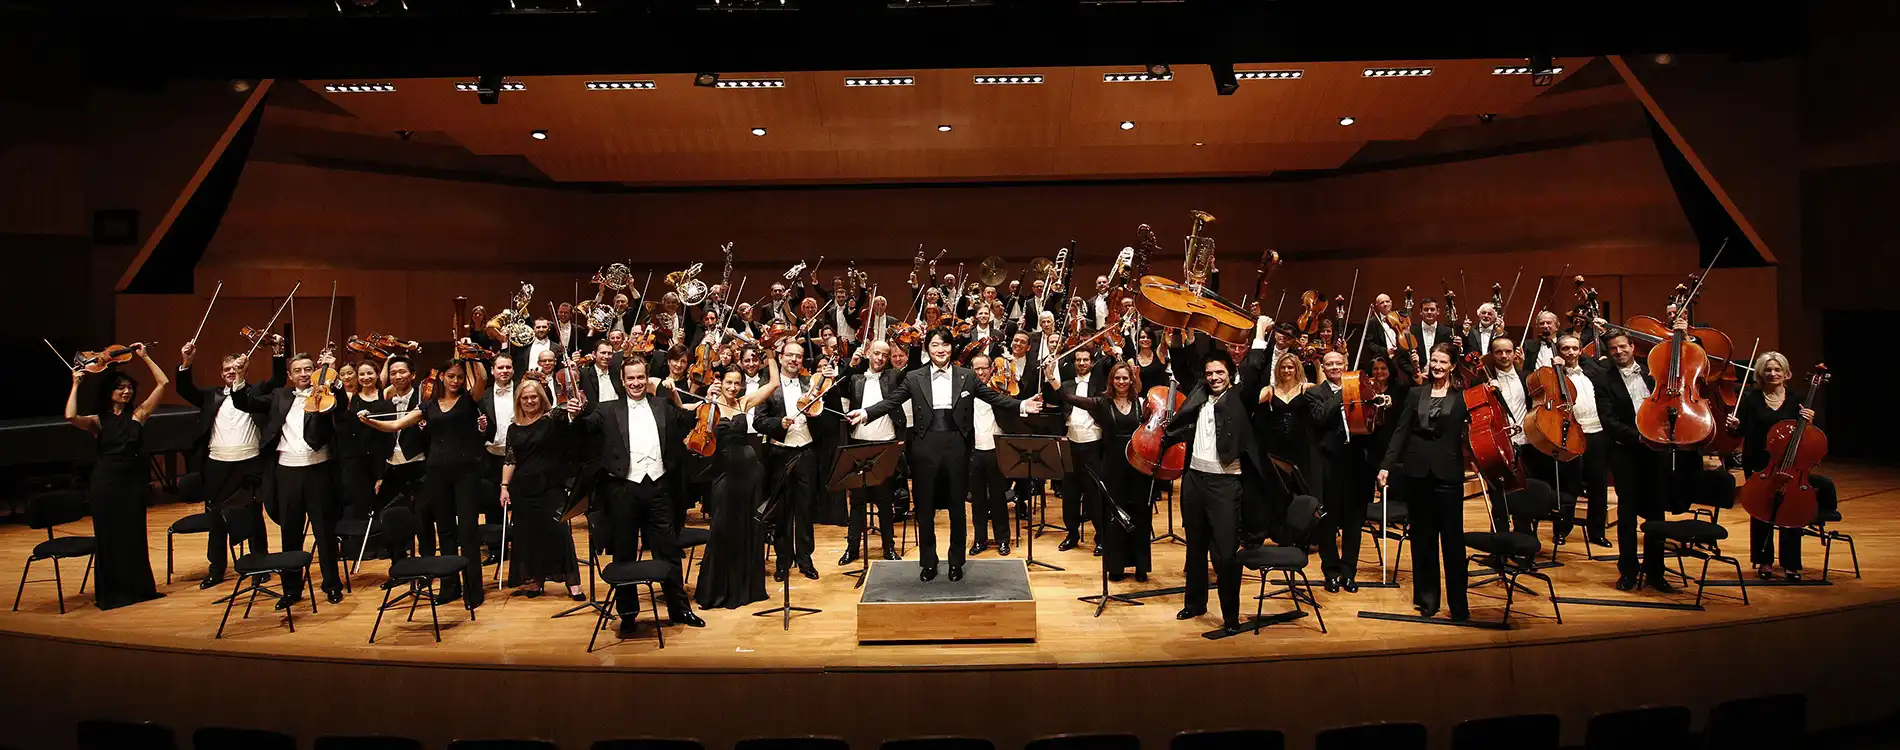 Monaco - Orchestre Philharmonique Monte-Carlo - Auditorium Rainier III